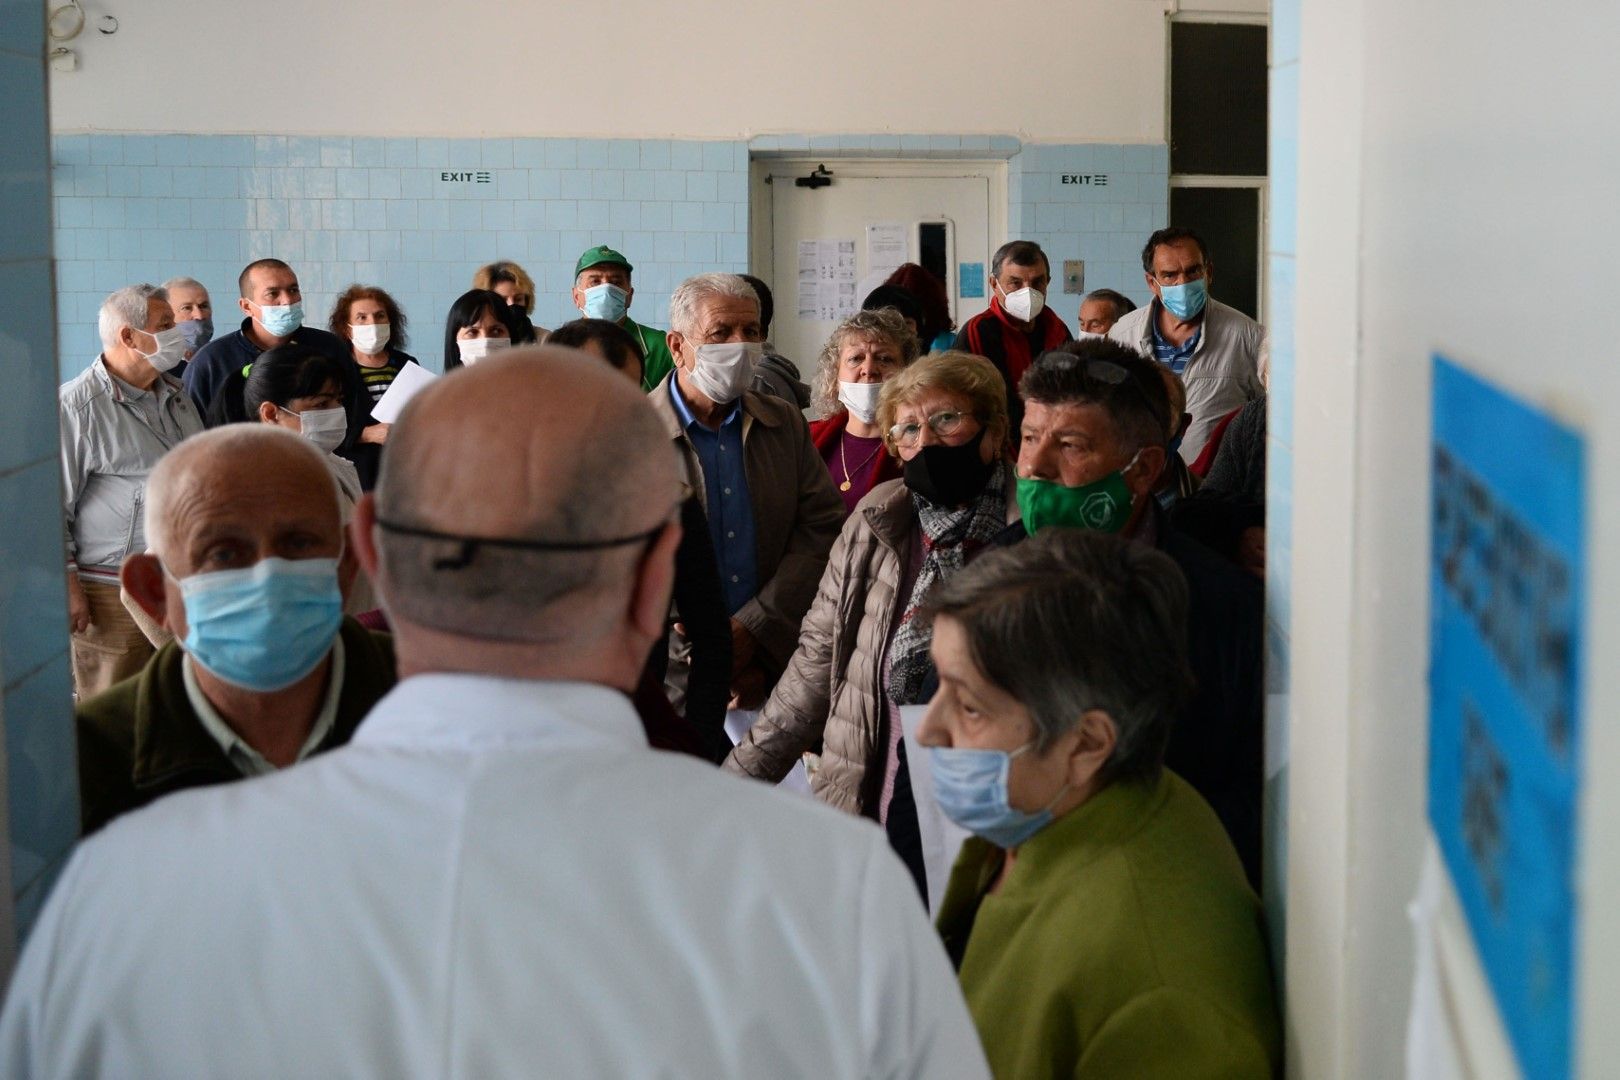 На 5 май в МБАЛ-Исперих се събраха много хора за "зеления коридор" за ваксинация. Медицински екип поставя ваксина за COVID-19 на всички желаещи без записване и с ваксини по избор